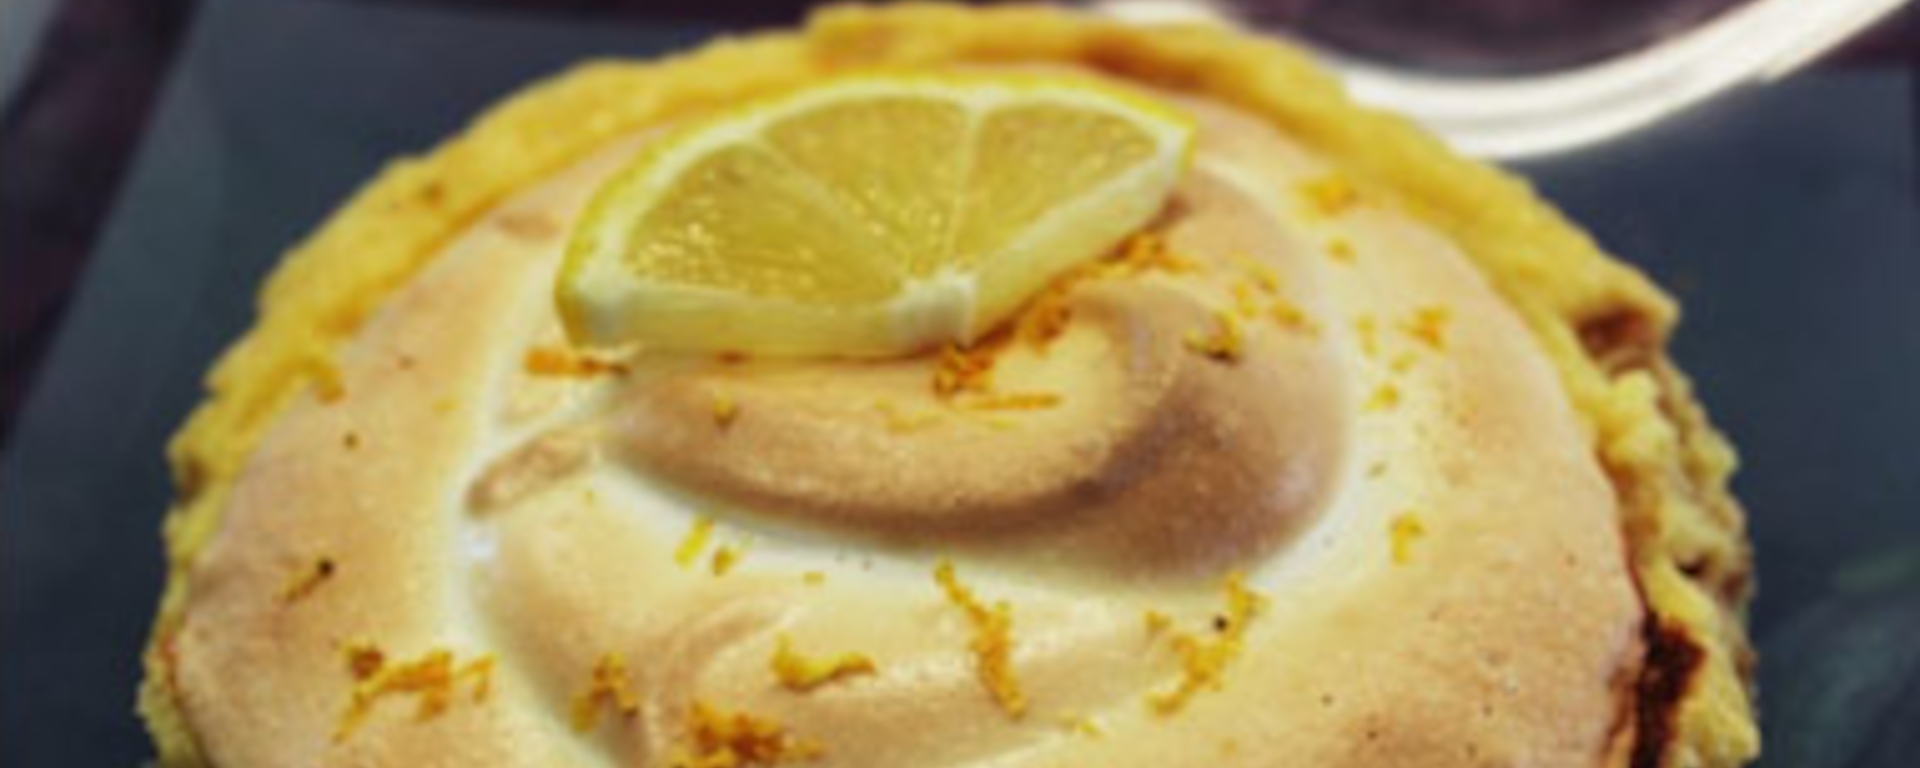 LuvMyRecipe.com - Amazing Lemon Meringue Pie Featured